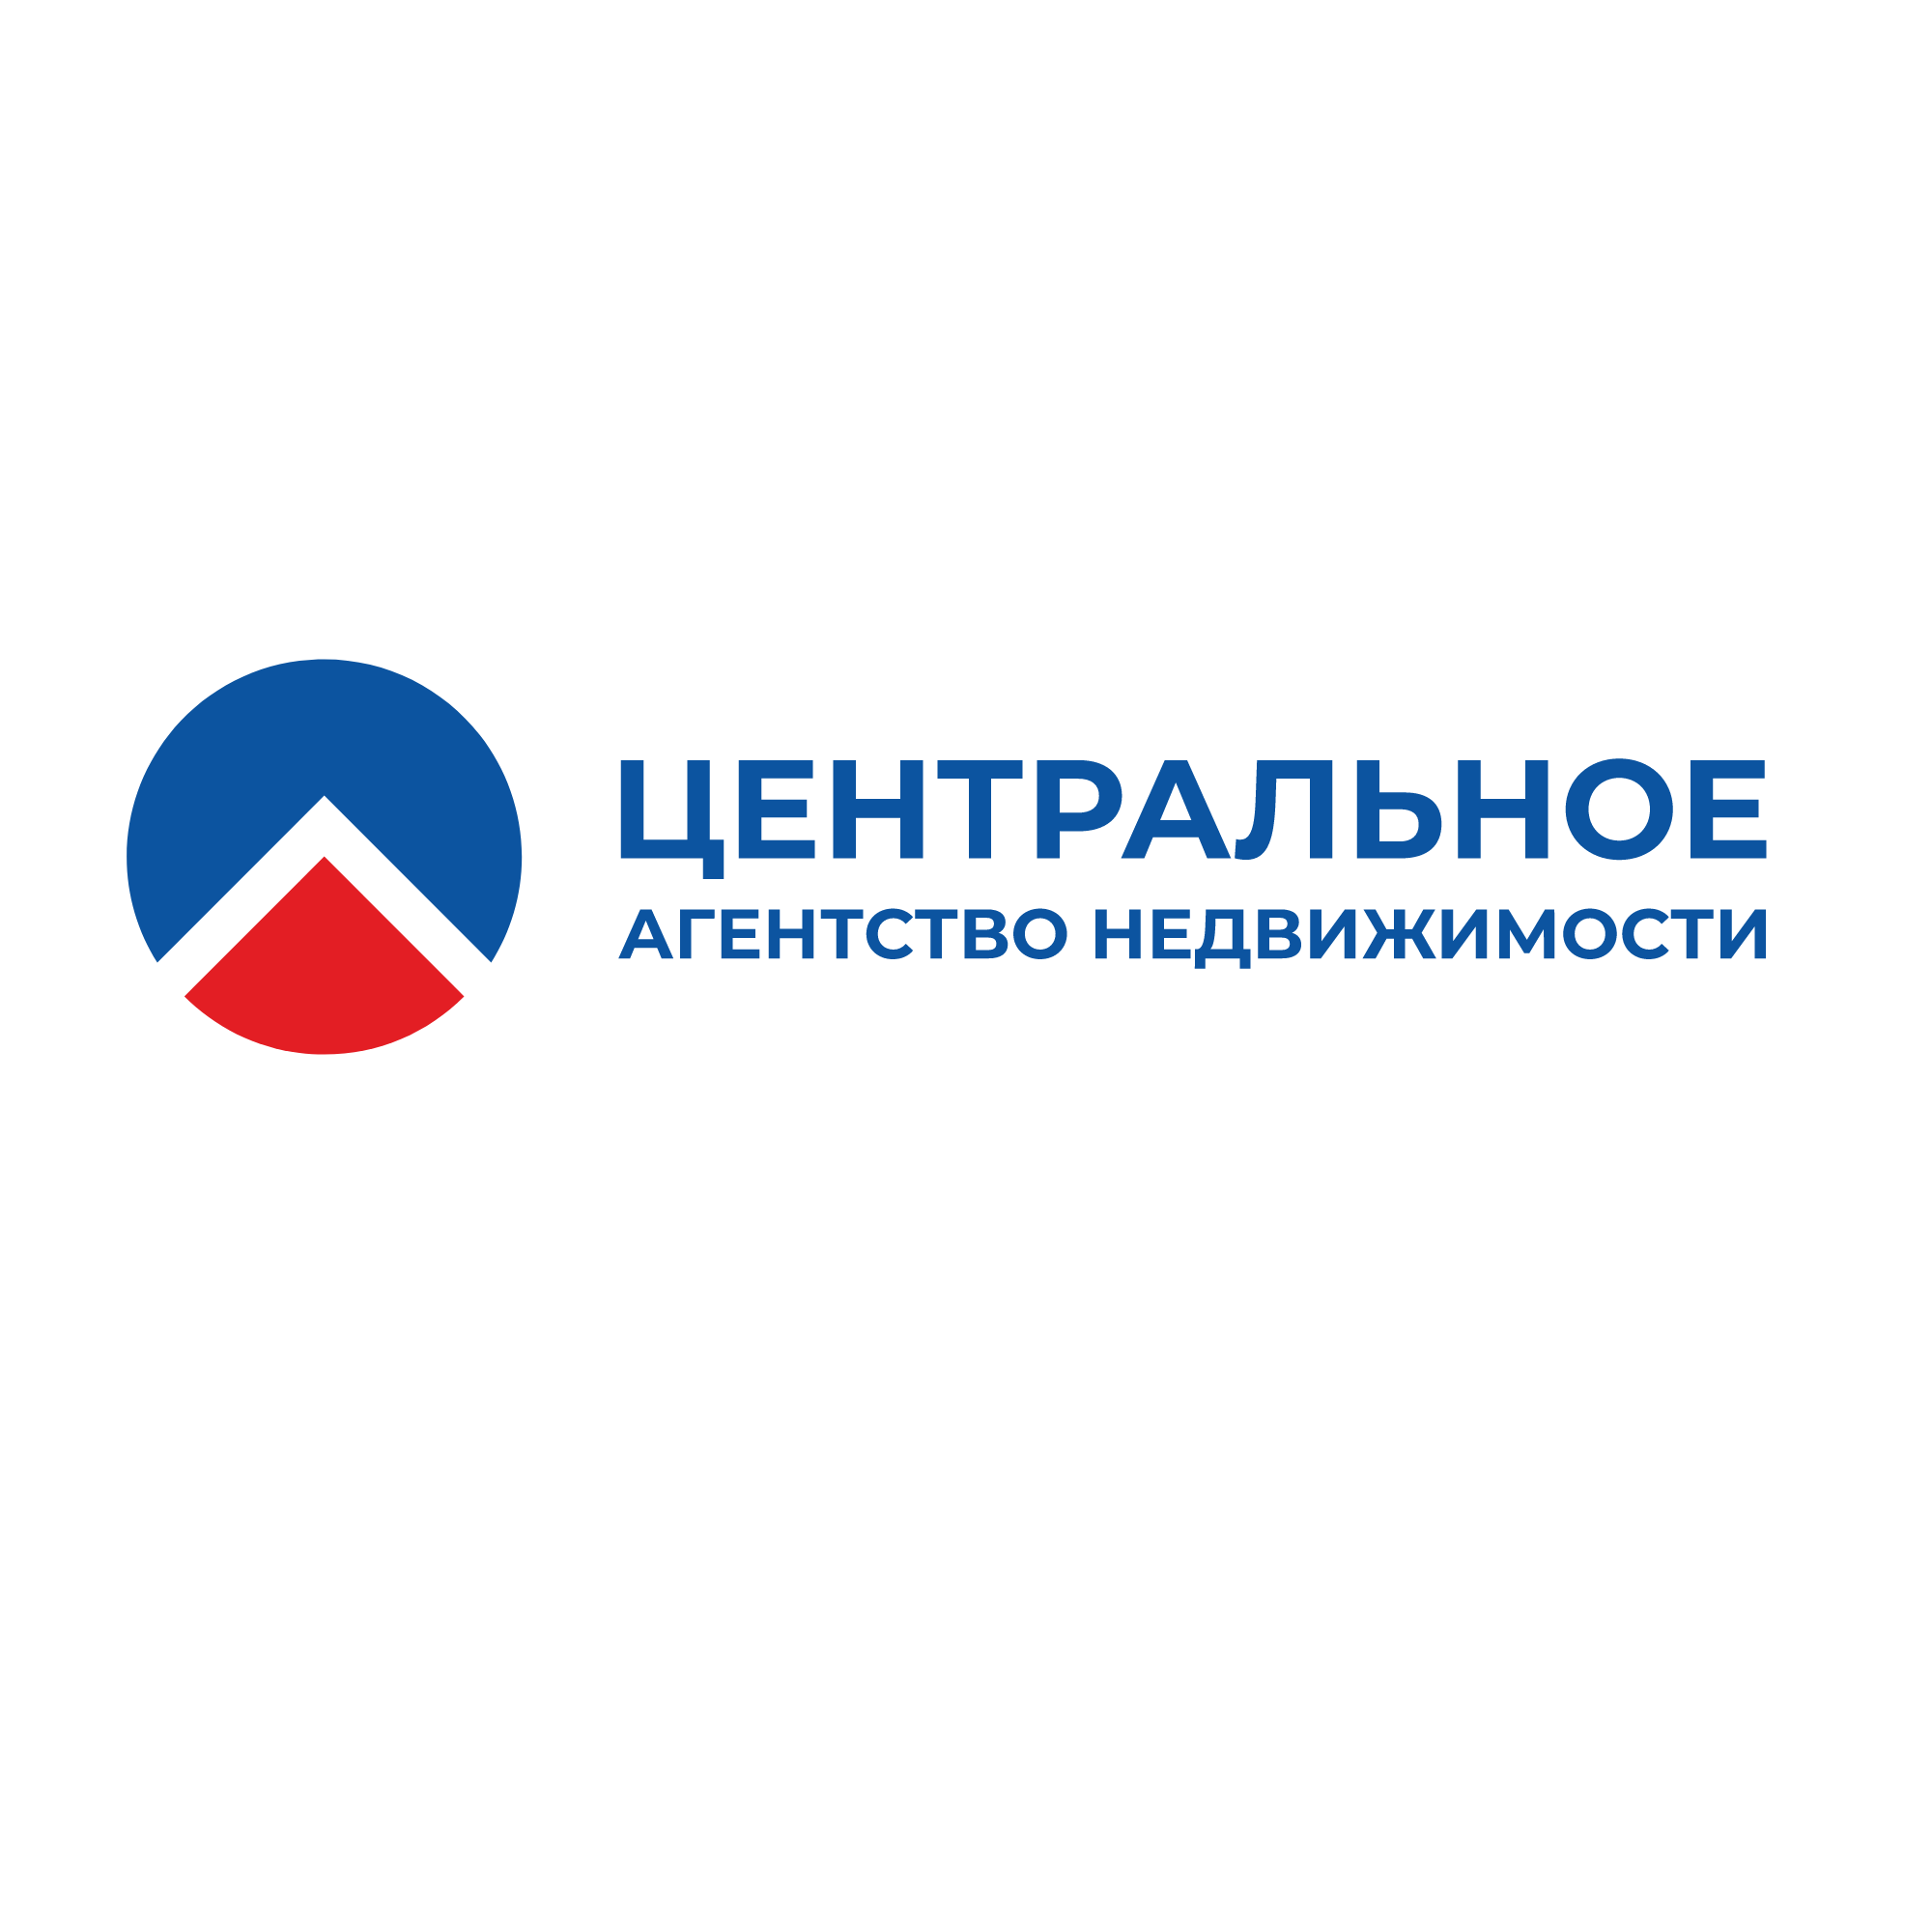 Фото / логотип АН Центральное агентство недвижимости на Красном проспекте 184, Новосибирск